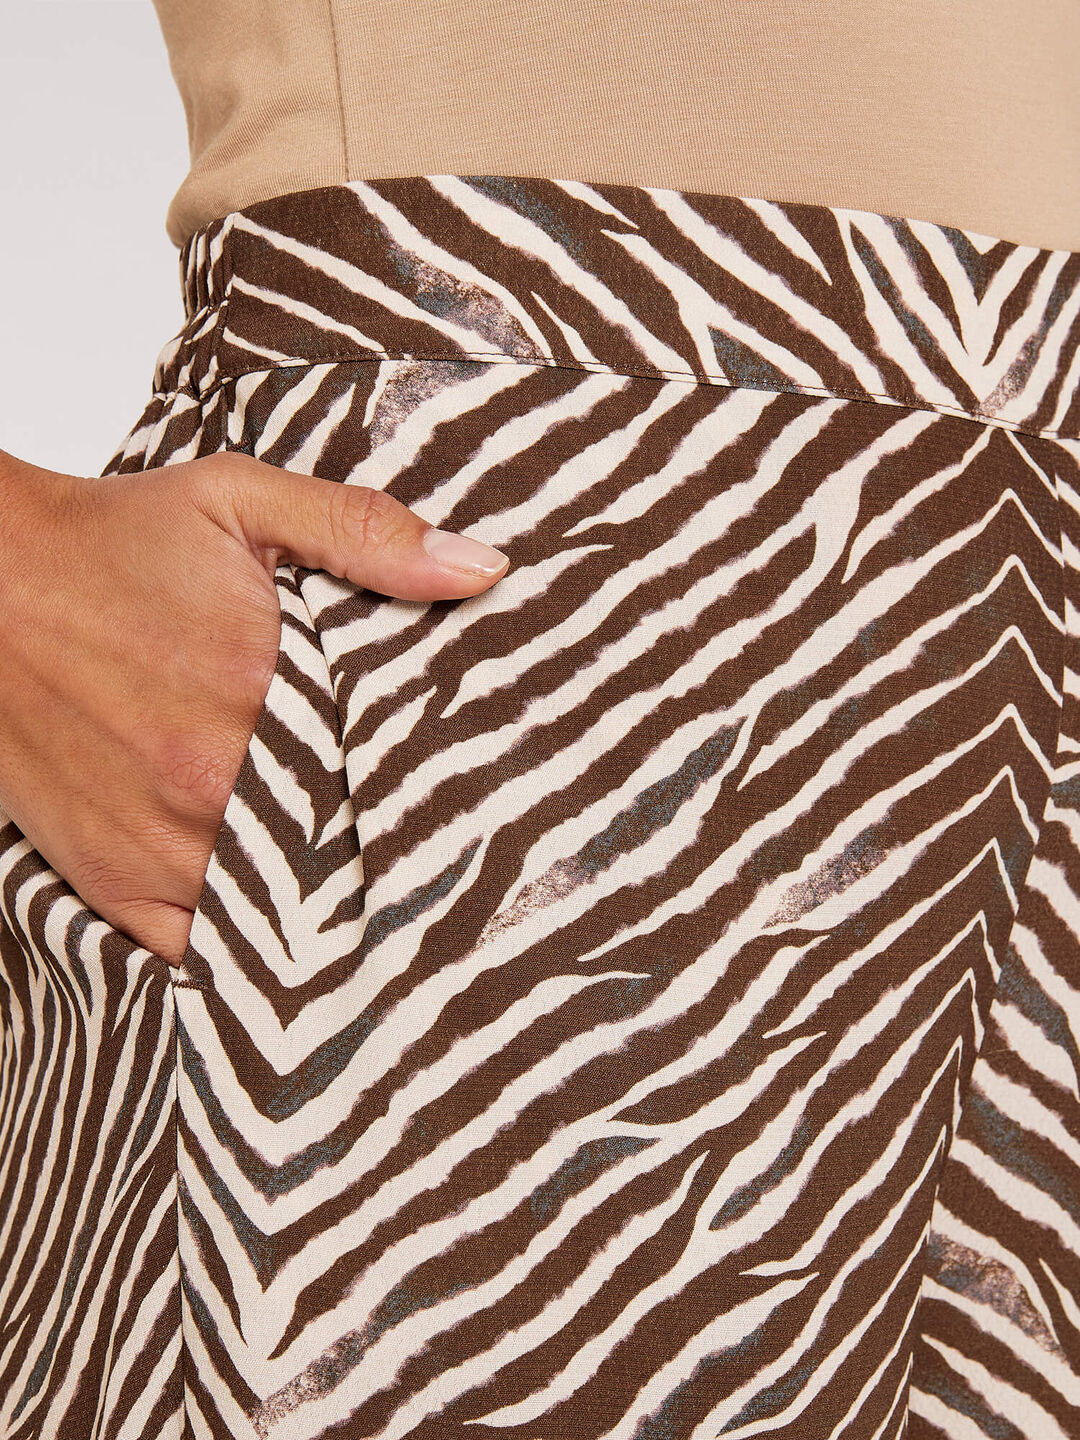 Zebra Palazzo Trousers | Apricot Clothing